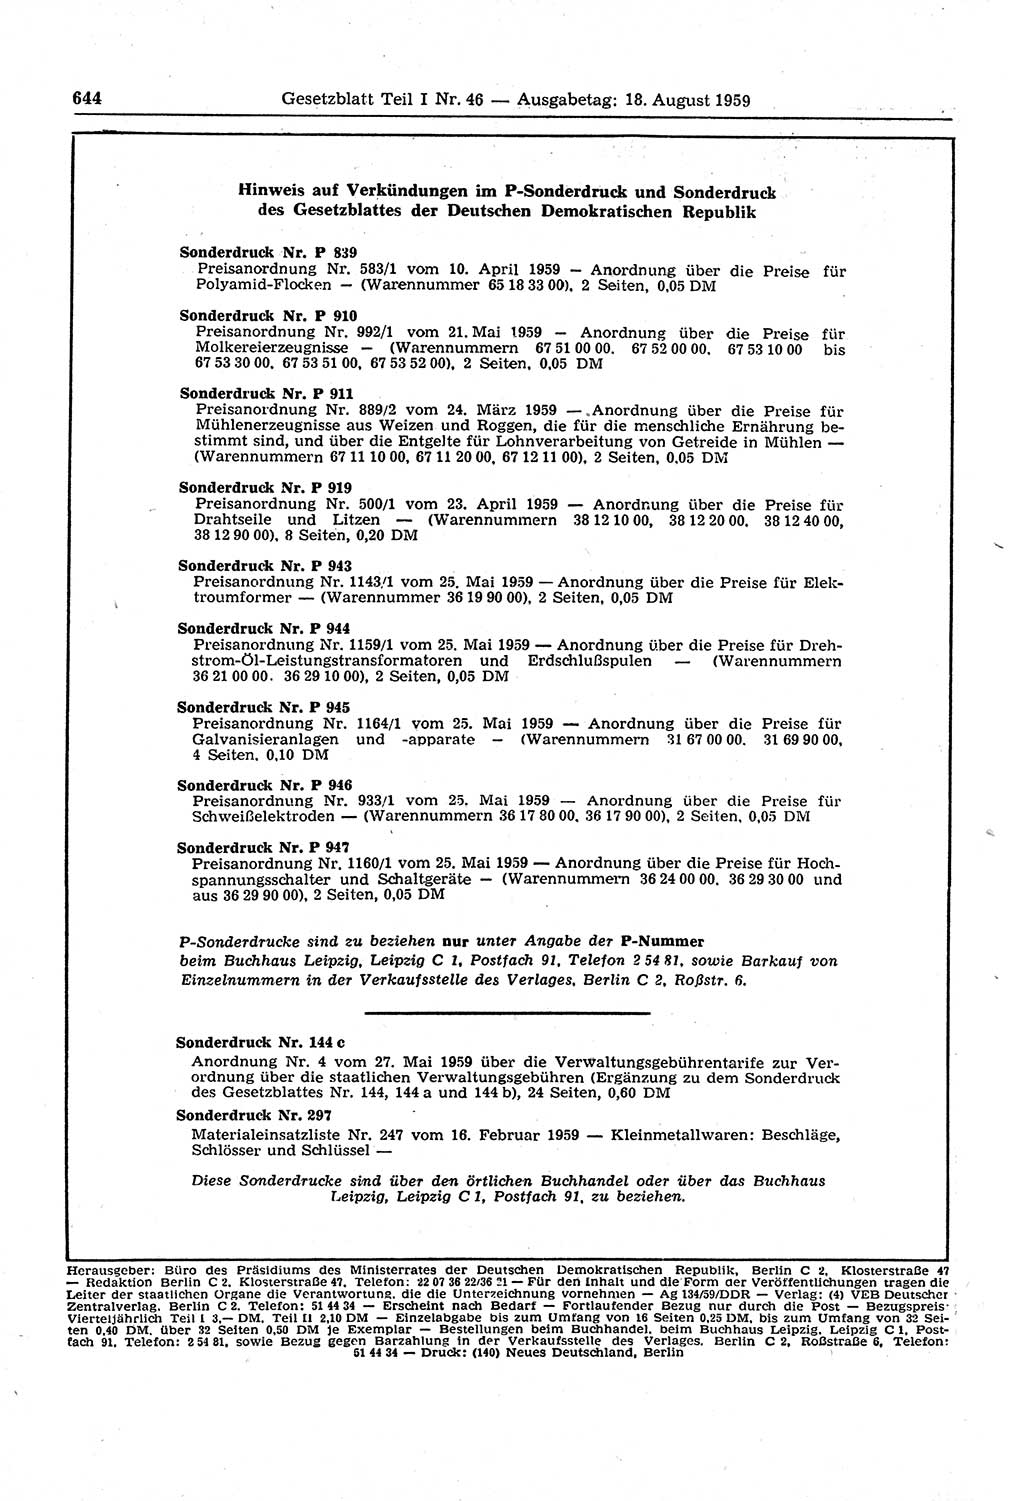 Gesetzblatt (GBl.) der Deutschen Demokratischen Republik (DDR) Teil Ⅰ 1959, Seite 644 (GBl. DDR Ⅰ 1959, S. 644)